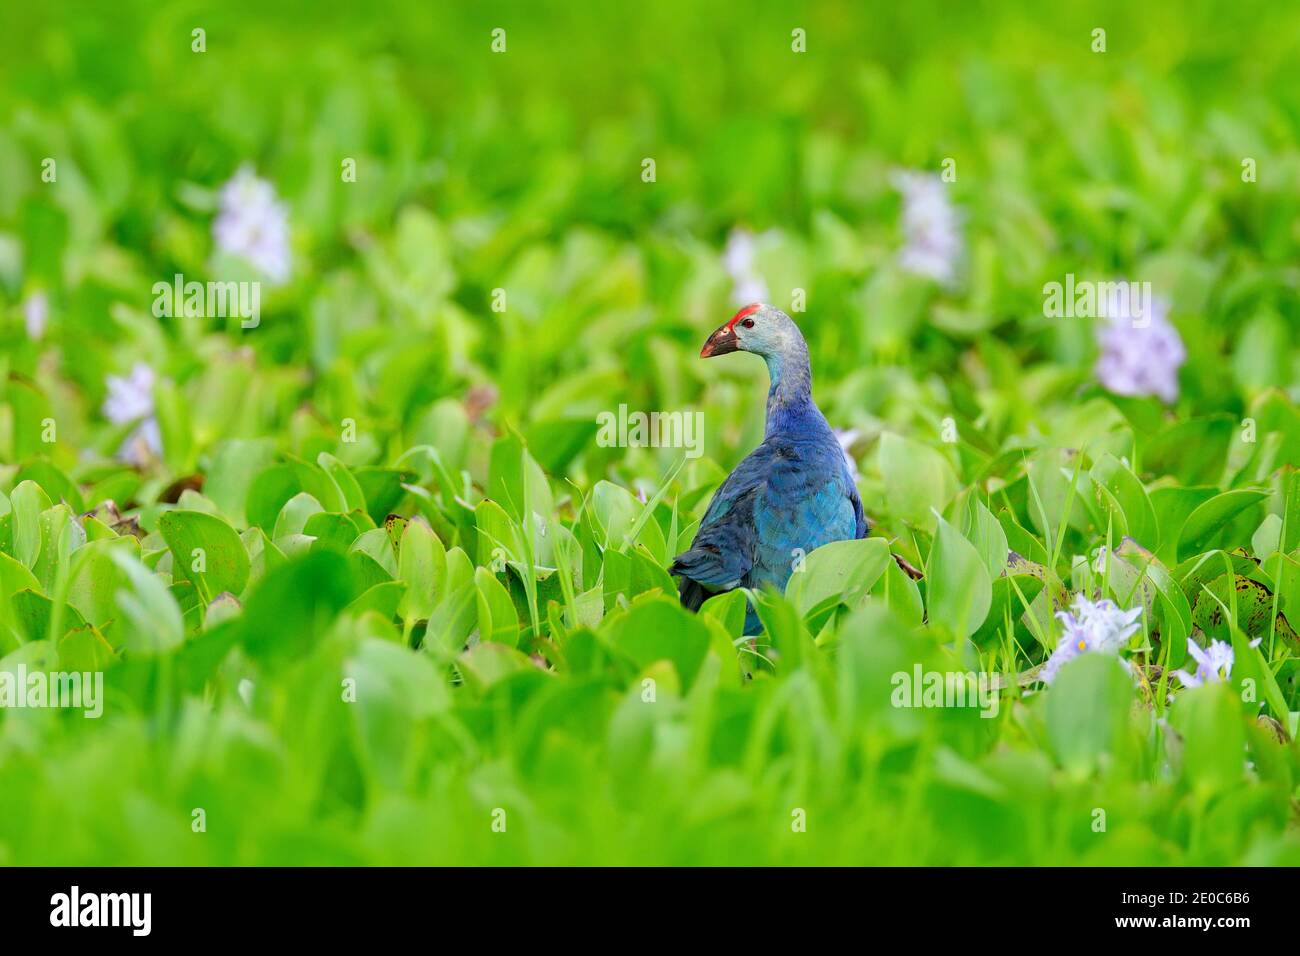 Cyphan, Porphyrio porphyrio, dans la nature vert mars habitat au Sri Lanka. Oiseau bleu rare avec tête rouge dans l'eau fleur herbe avec des fleurs roses. Banque D'Images